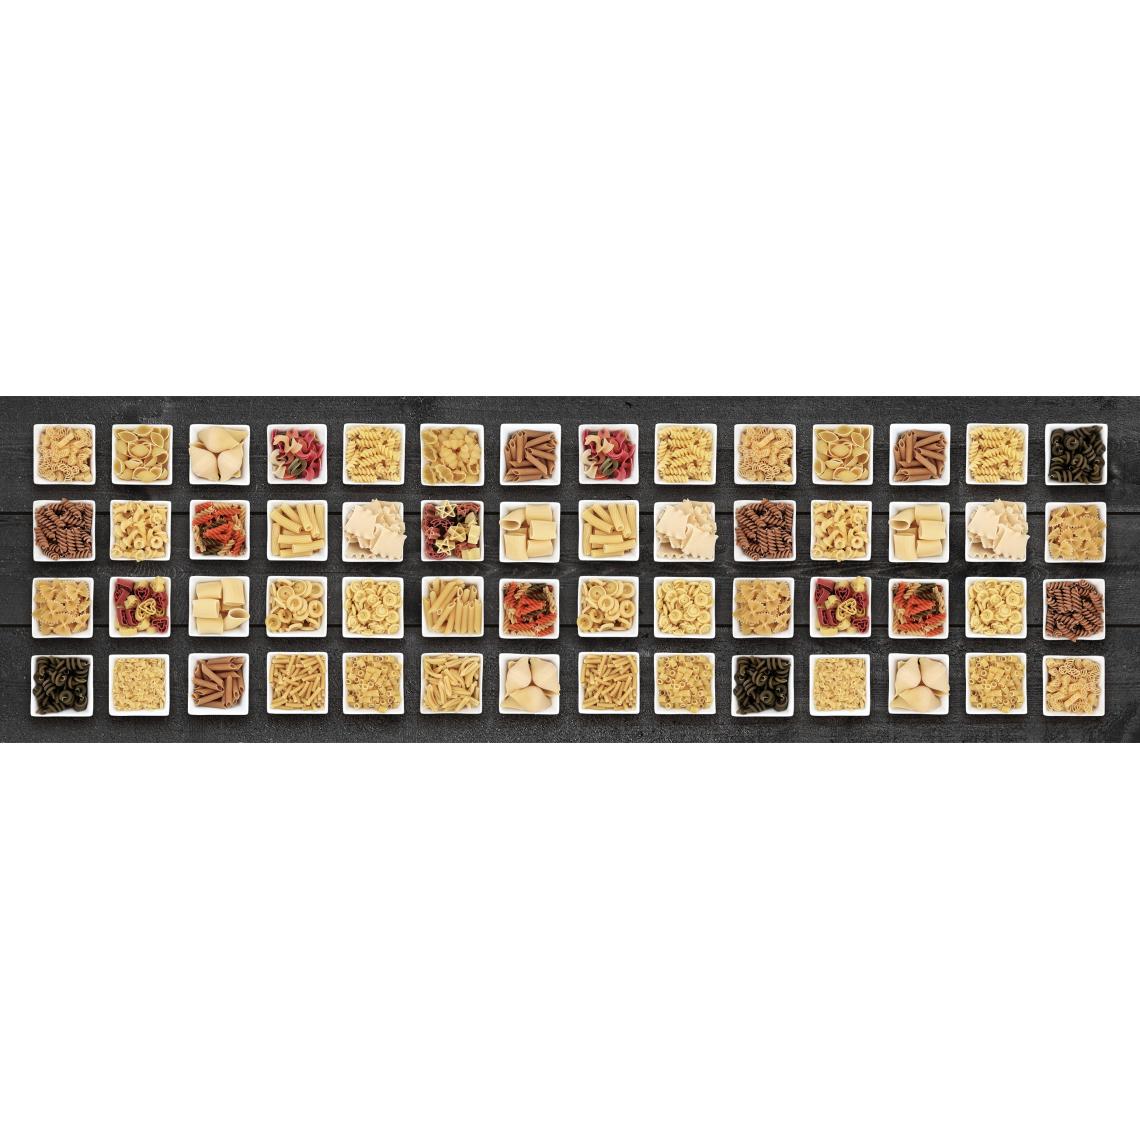 Alter - Tapis de cuisine, 100% Made in Italy, Tapis antitache avec impression numérique, Tapis antidérapant et lavable, Modèle Erchie, 120x52 cm - Tapis